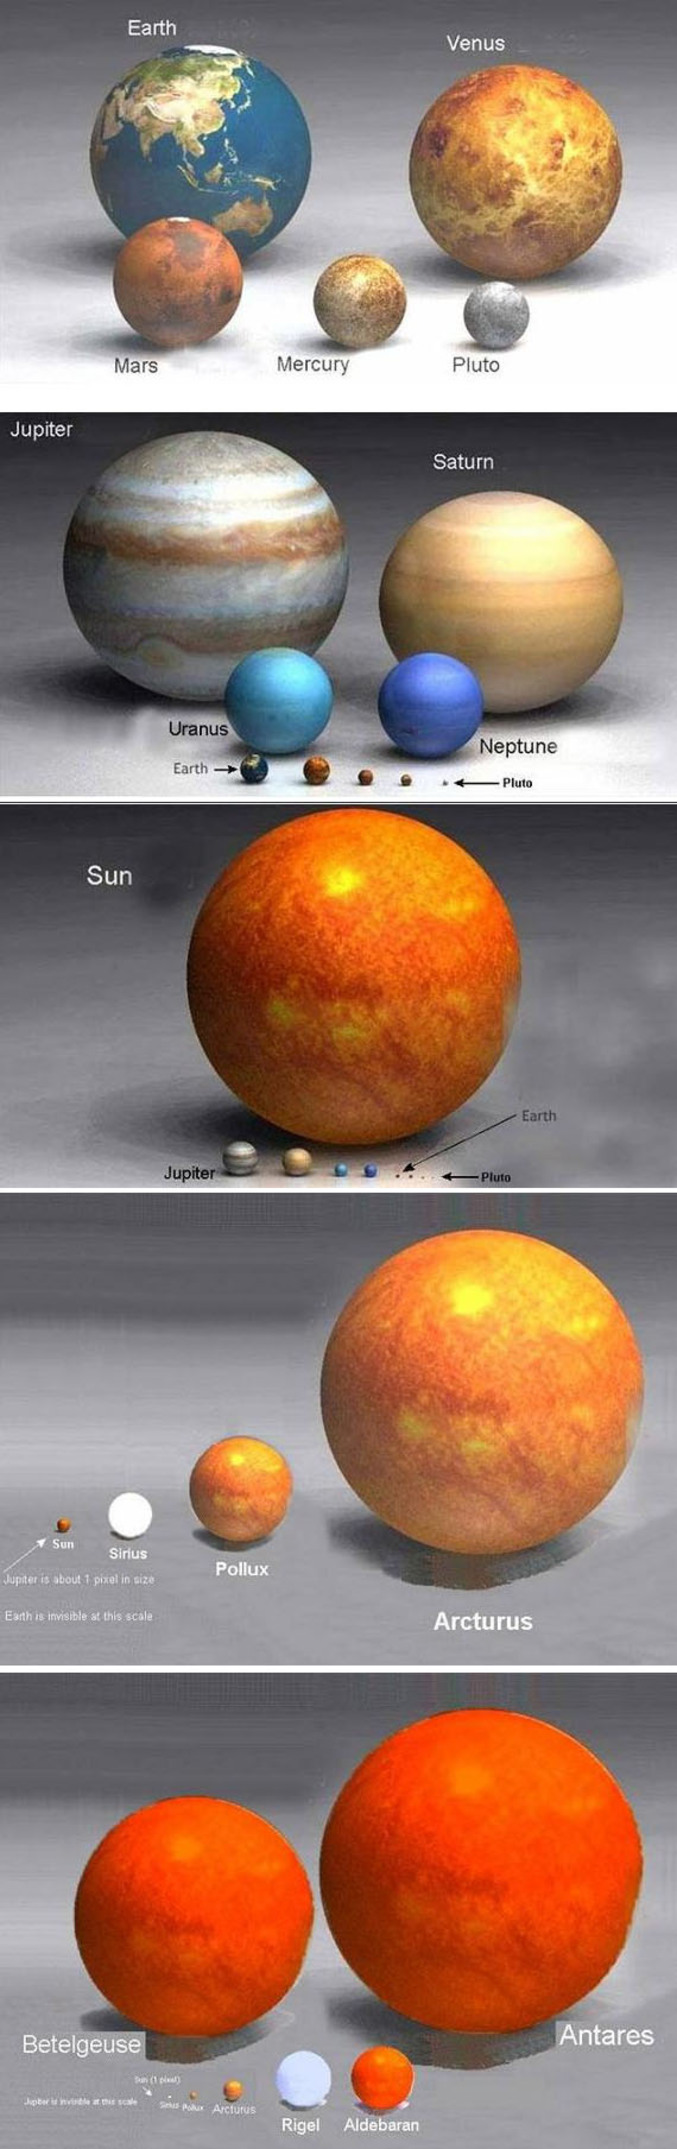 La taille de la Terre et des autres planètes : Nous sommes vraiment un grain de poussière dans cet univers.